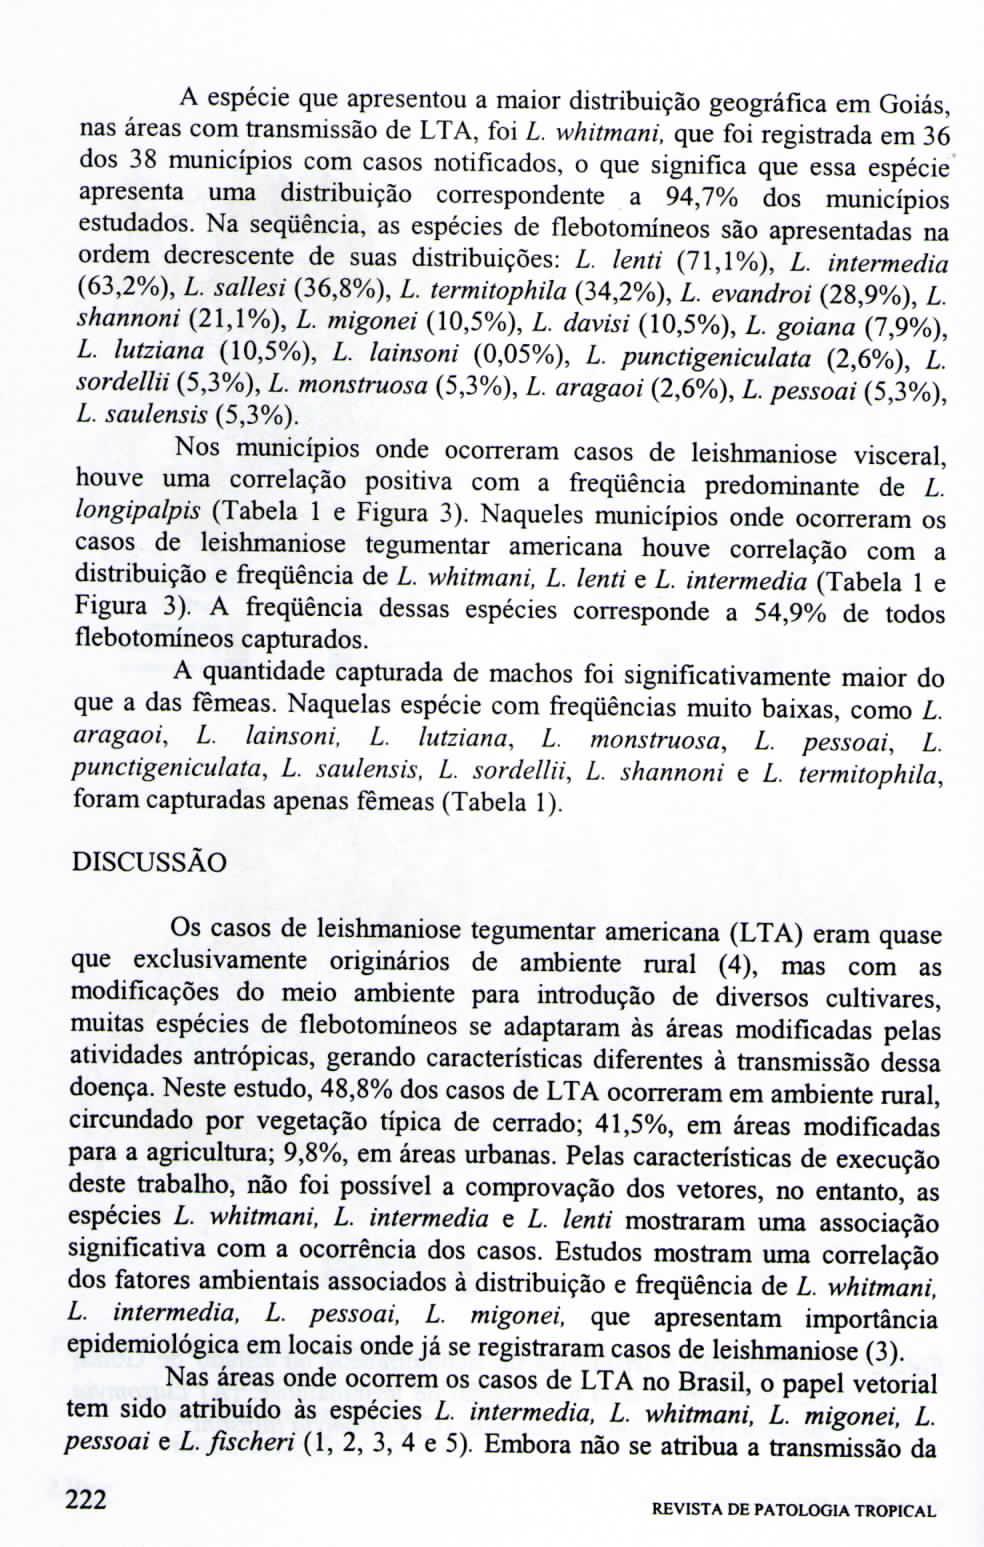 A espécie que apresentou a maior distribuição geográfica em Goiás, nas áreas com transmissão de LTA, foi L whitmani, que foi registrada em 36 dos 38 municípios com casos notificados, o que significa